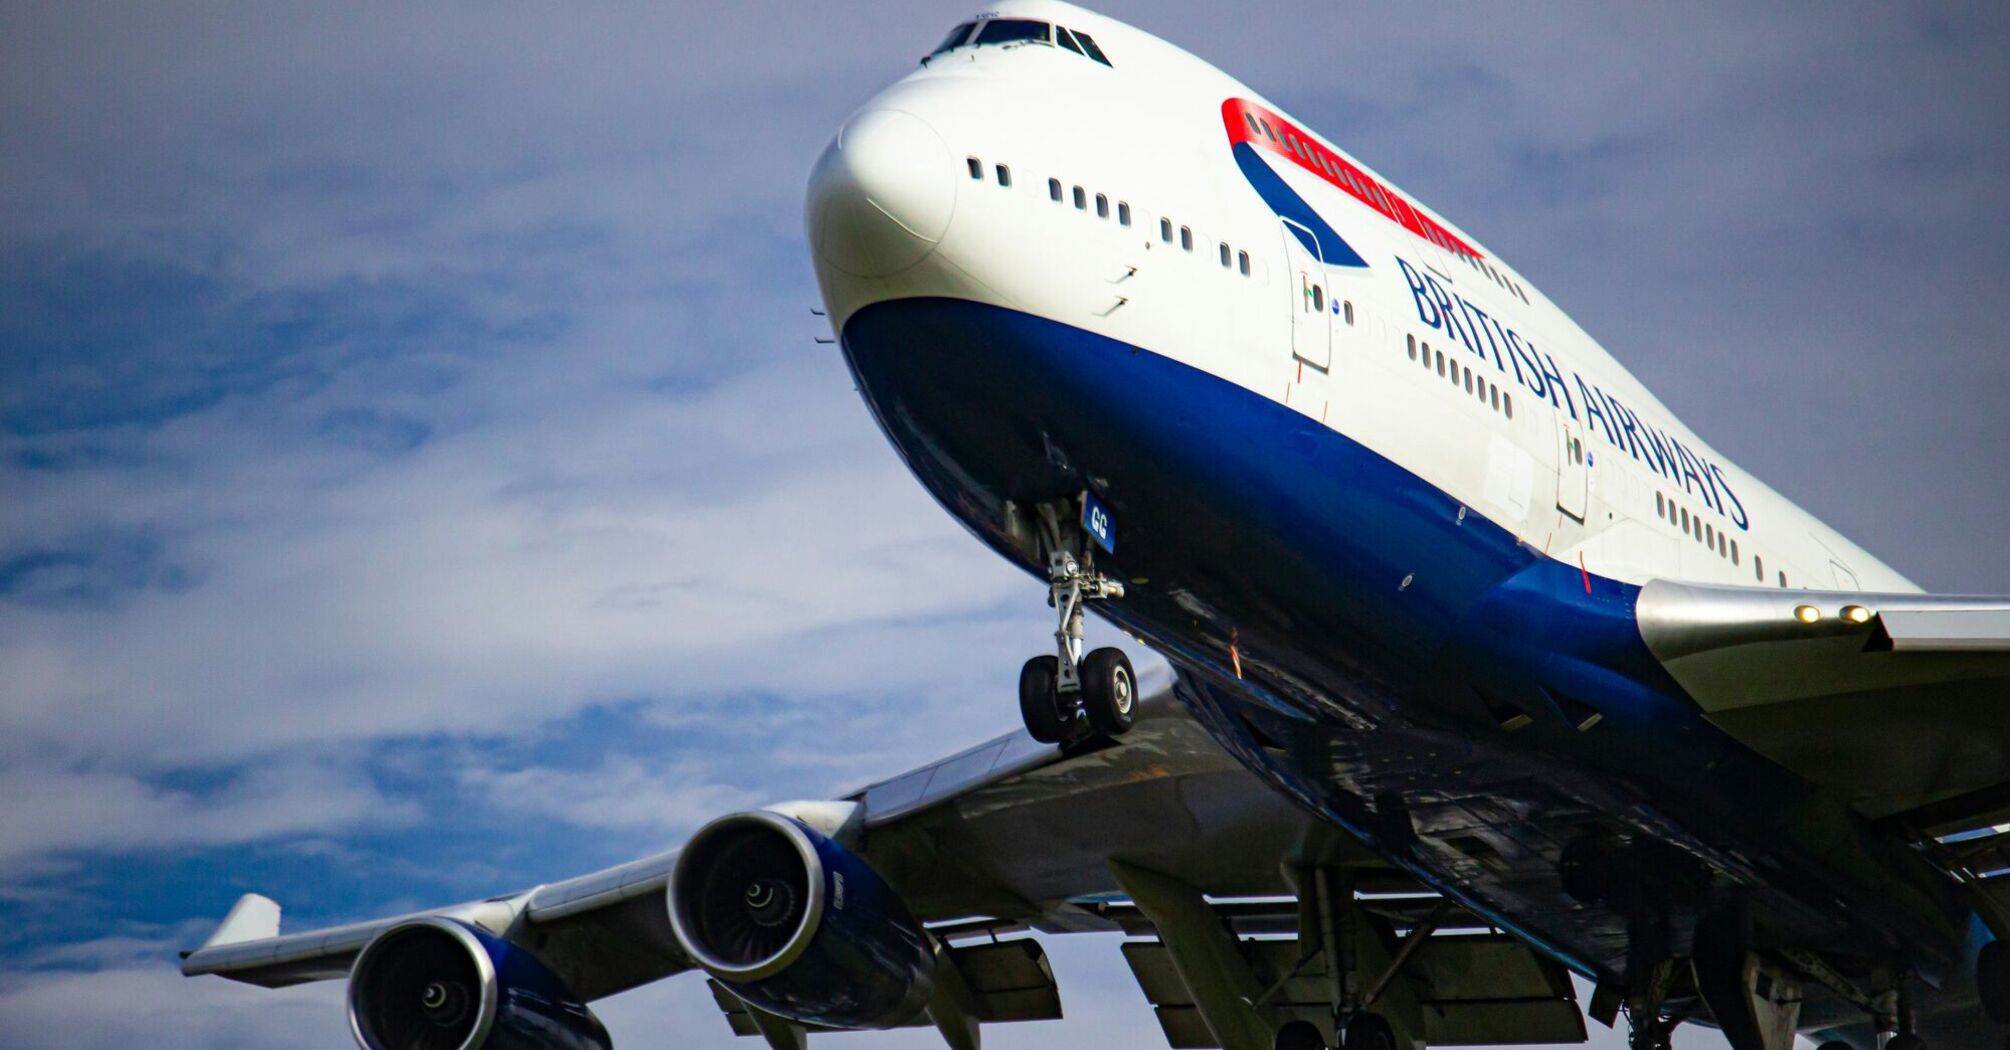 British Airways 747 on final 27L at Heathrow